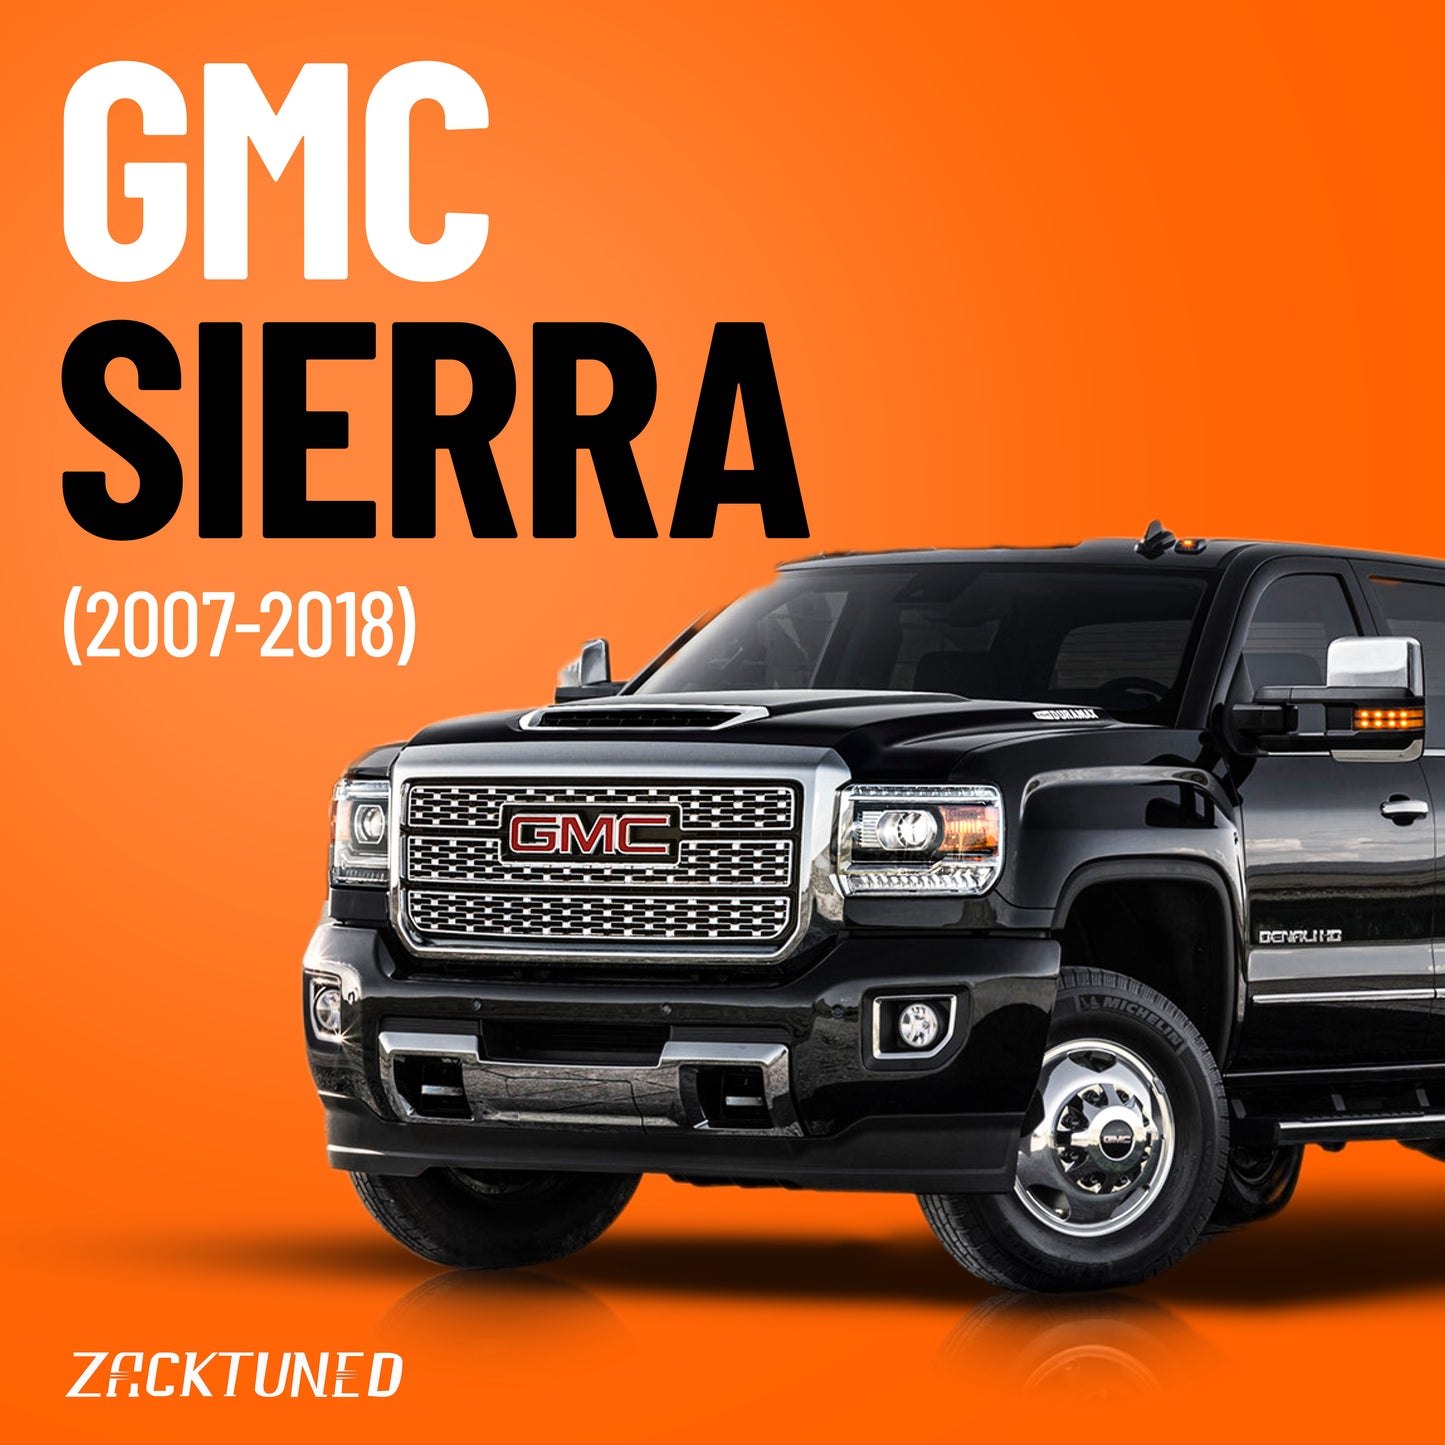 GMC Sierra (2007-2018)